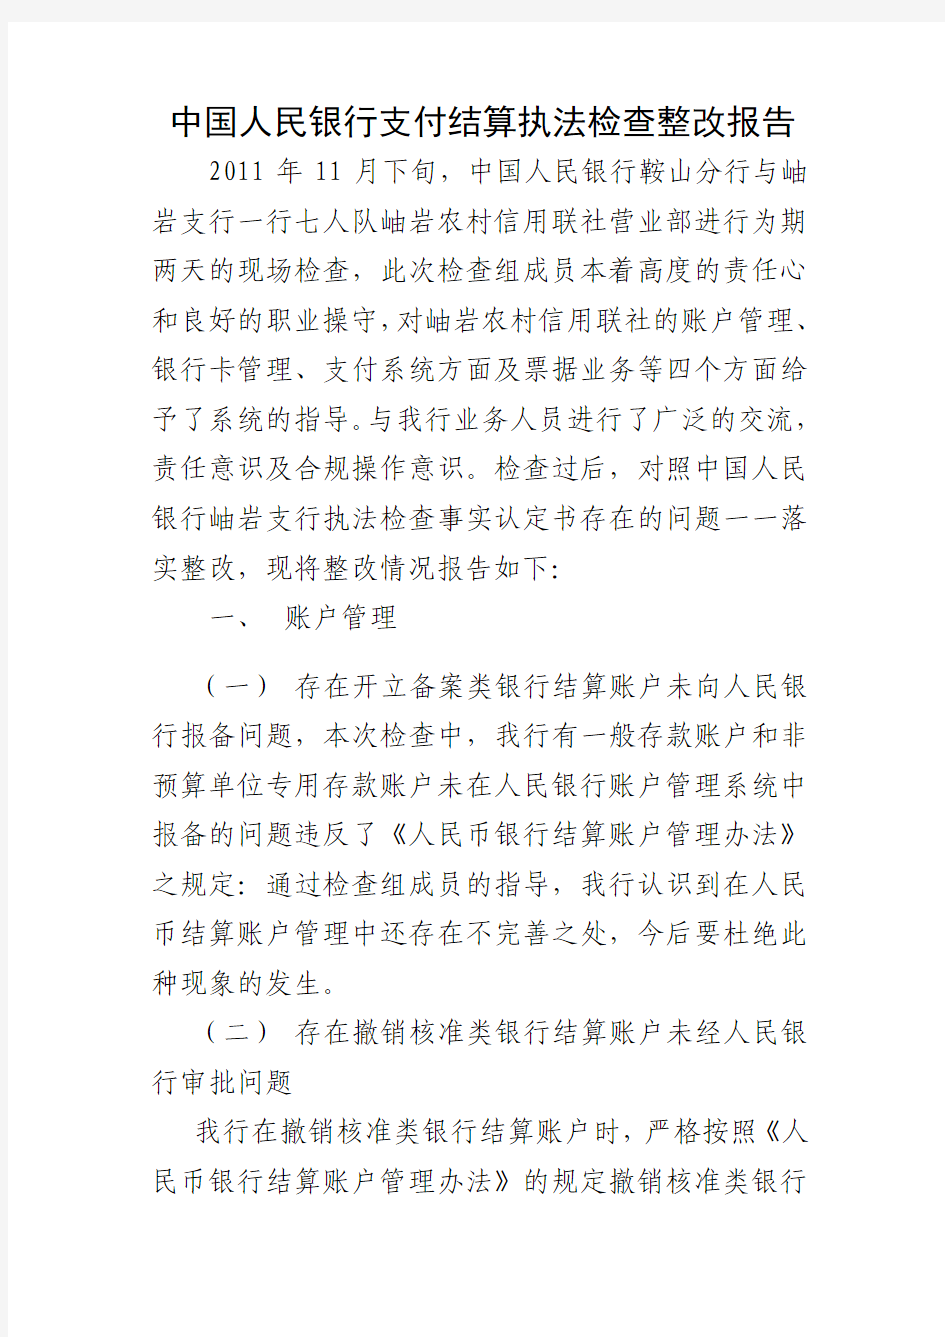 中国人民银行支付结算执法检查整改报告 精品